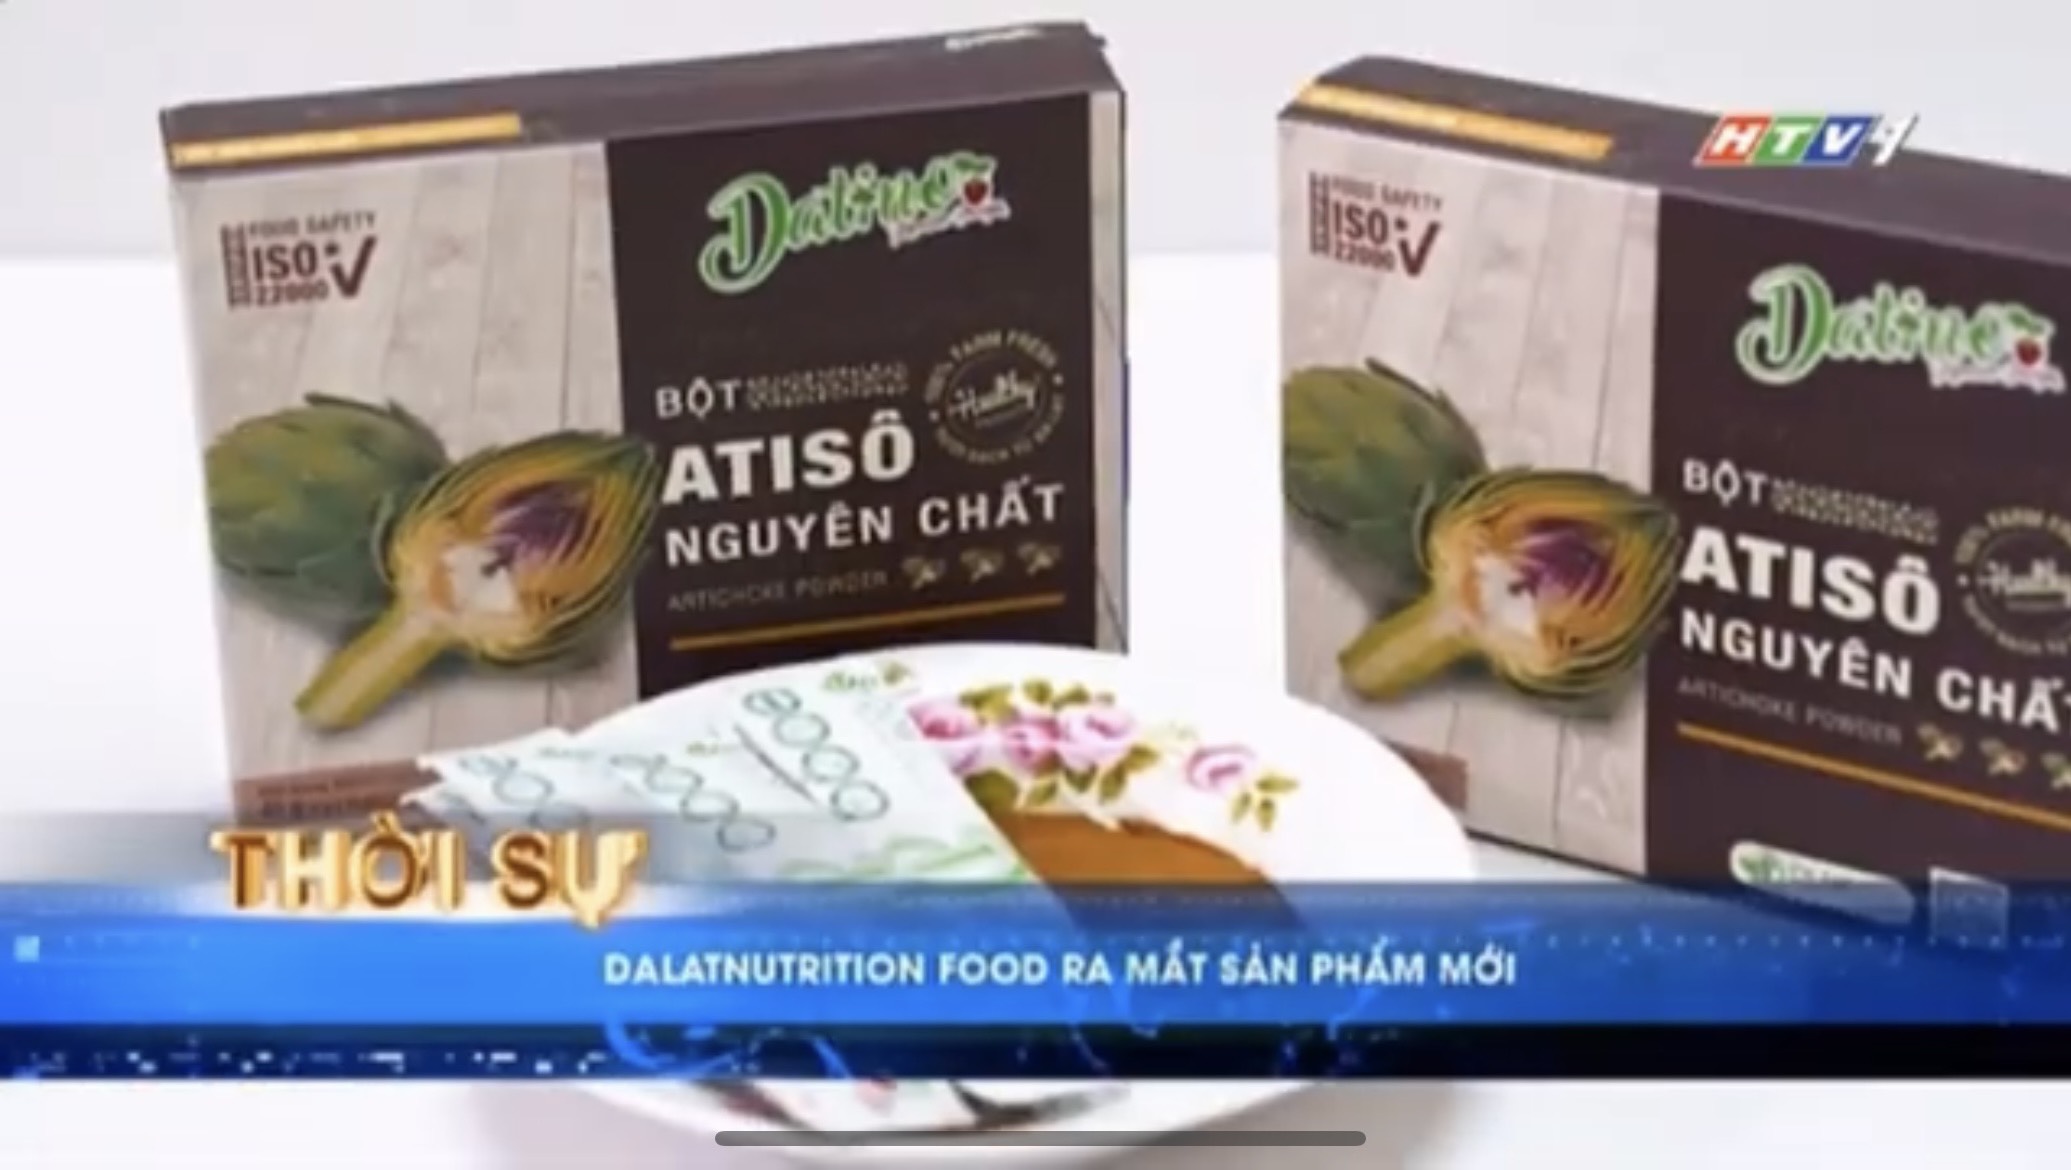 Ra mắt sản phẩm Bột Atiso Datino trên kênh HTV1